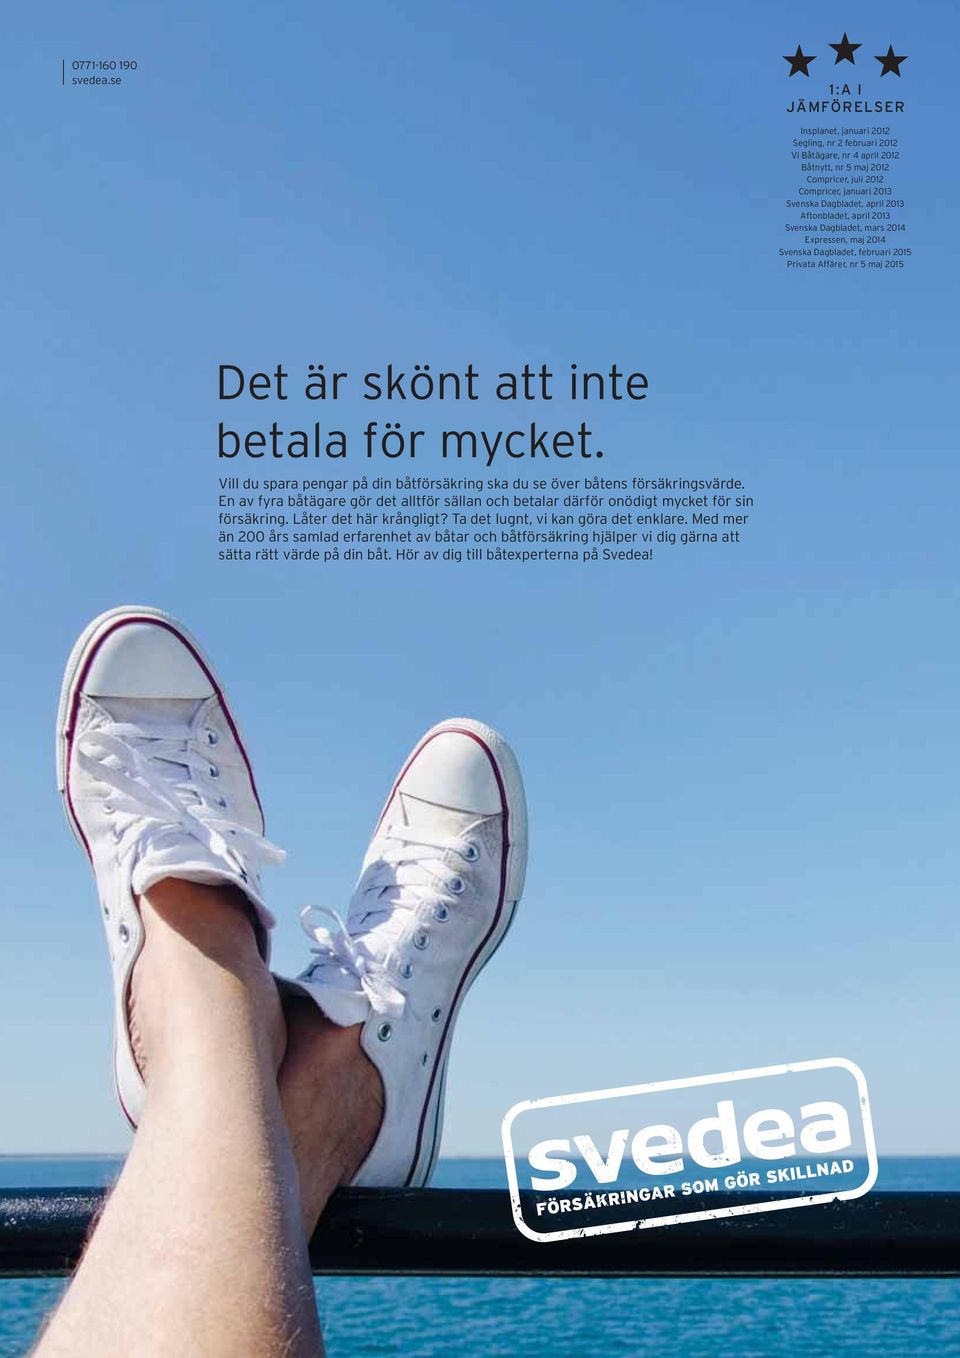 Aftonbladet, april 2013 Svenska Dagbladet, mars 2014 Expressen, maj 2014 Svenska Dagbladet, februari 2015 Privata Affärer, nr 5 maj 2015 Det är skönt att inte betala för mycket.